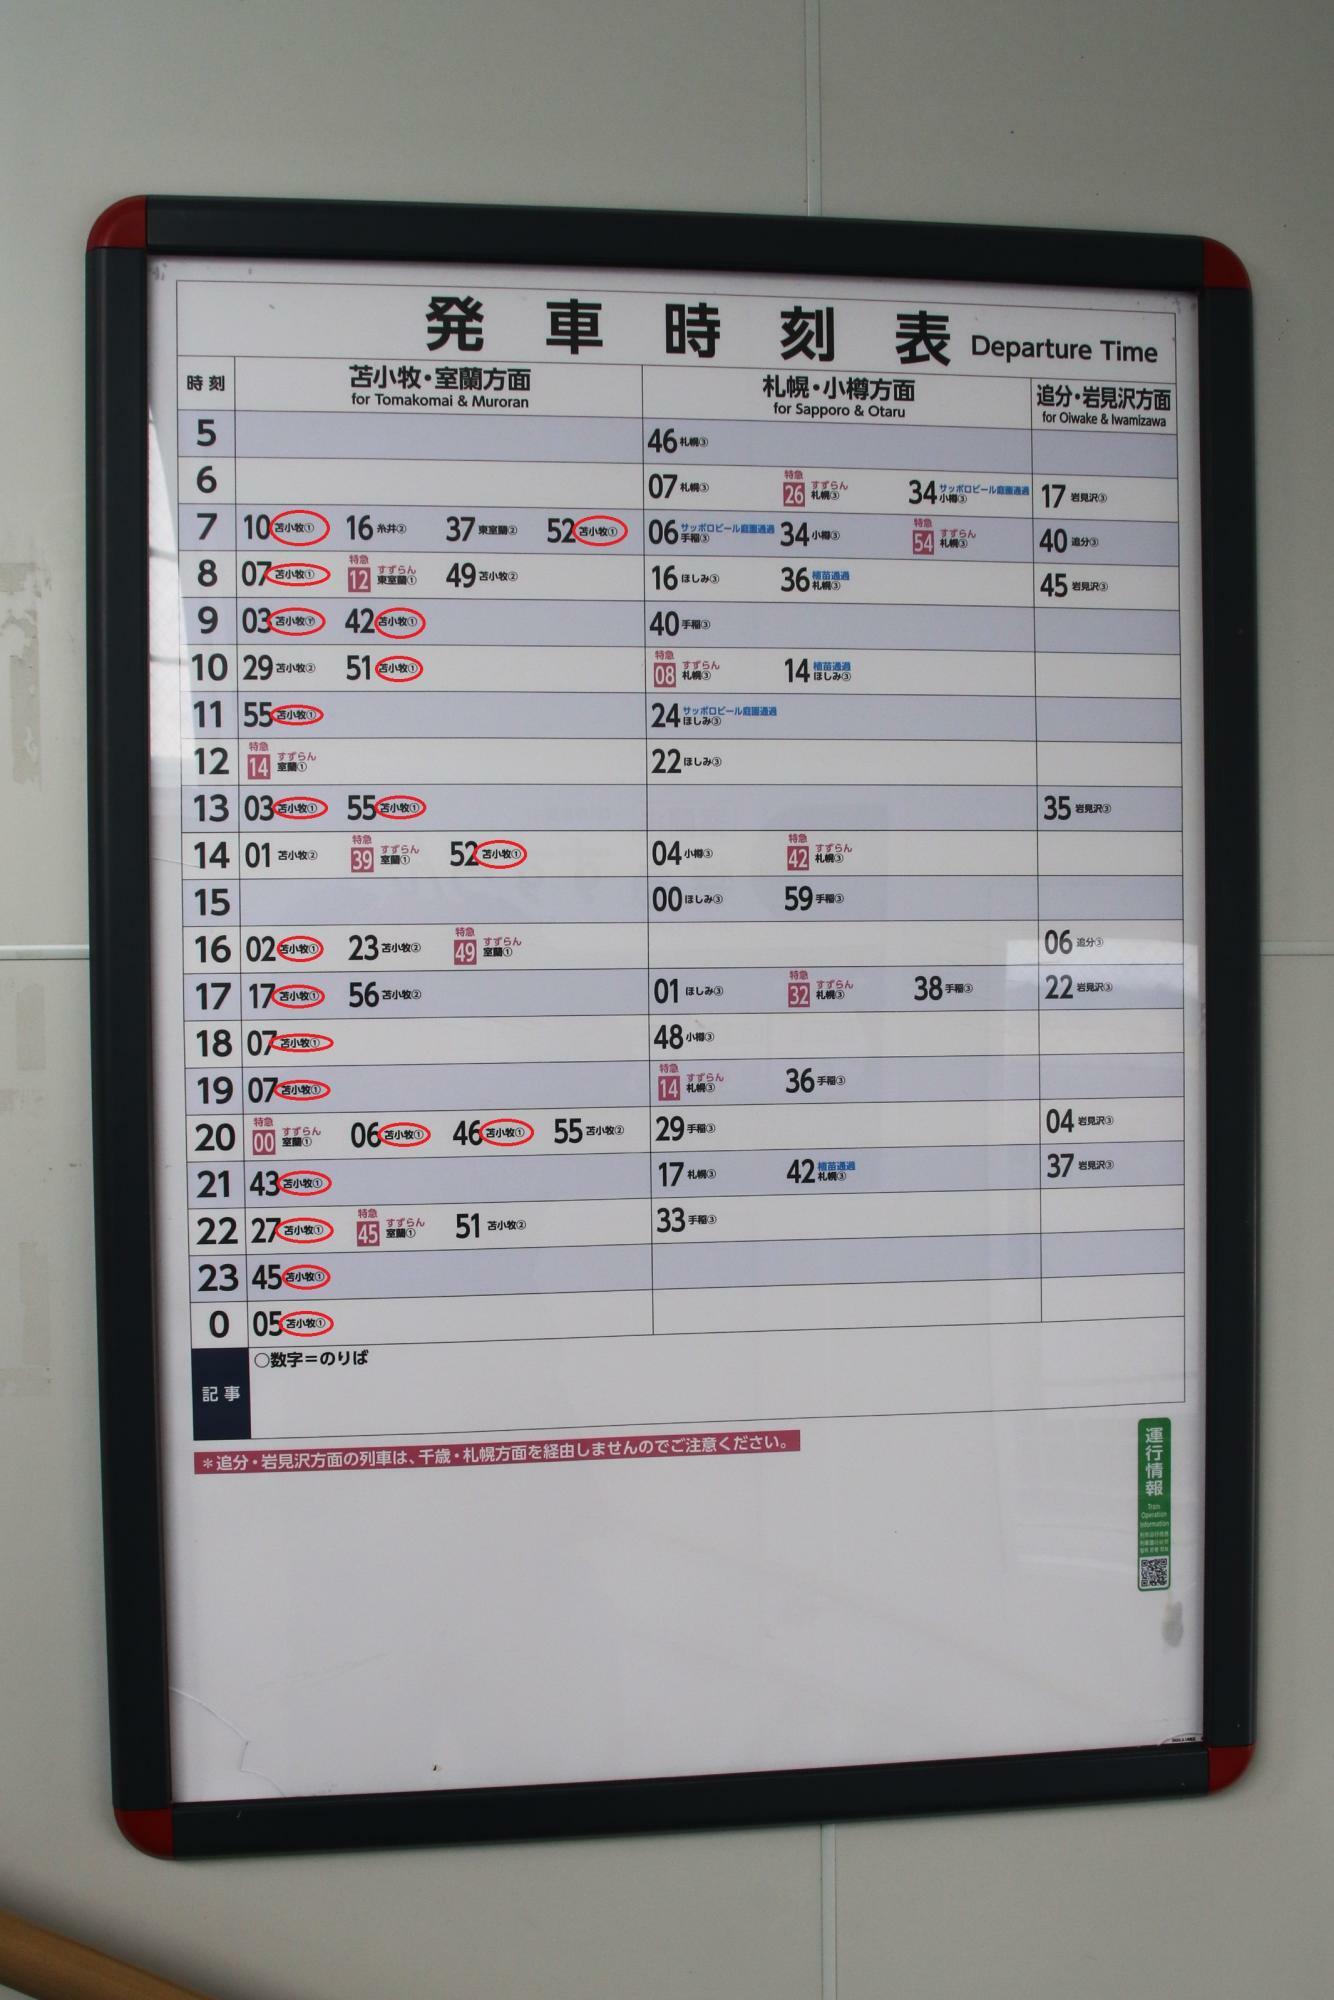 沼ノ端駅発車時刻表。1番ホーム到着が多い。